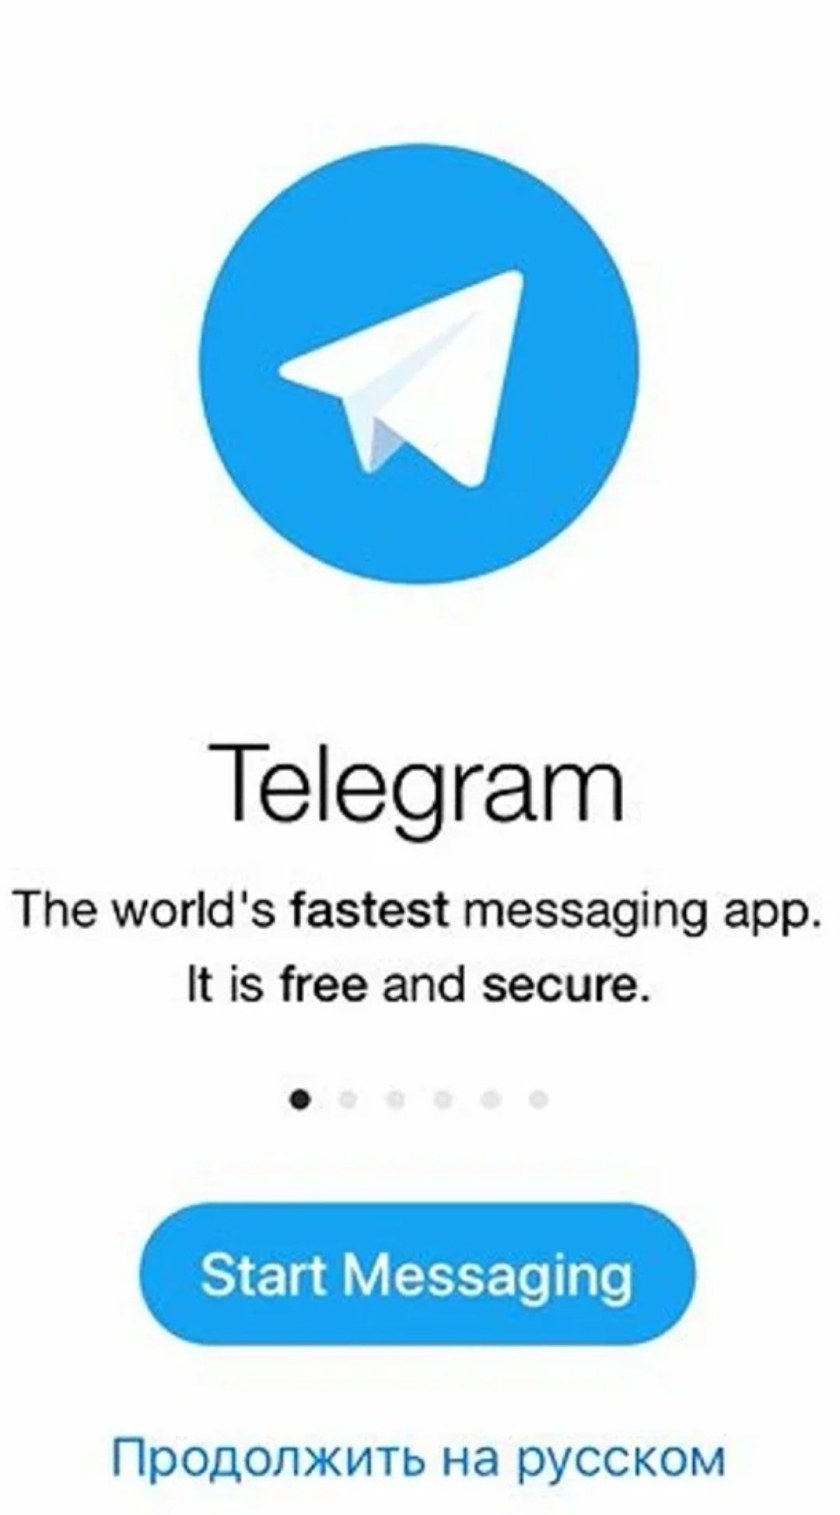 Телеграмм веб скачать на телефон бесплатно русском (120) фото